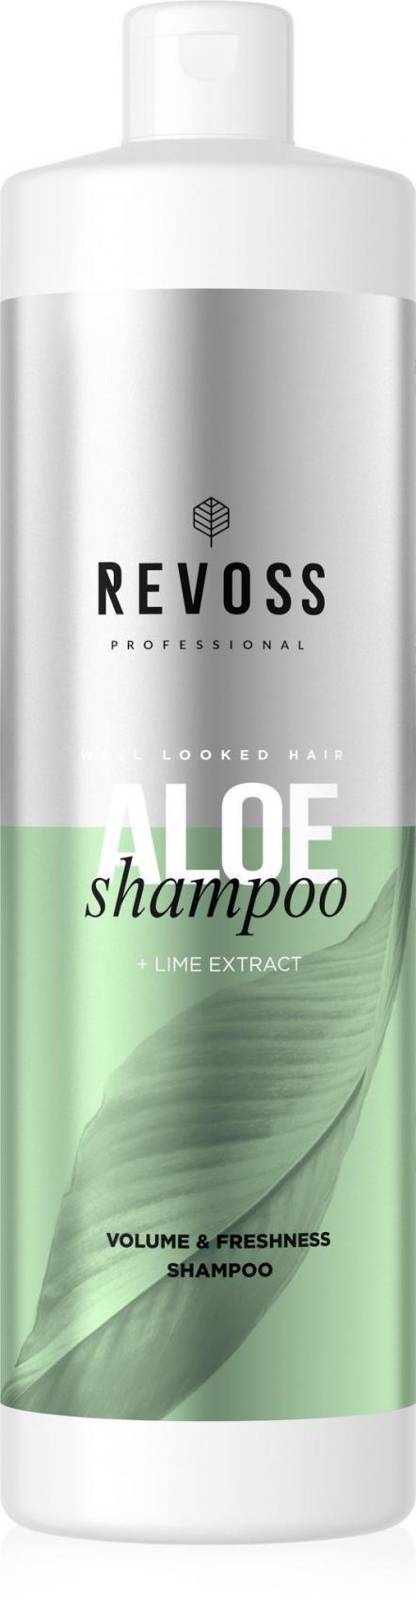 szampon do włosów naty